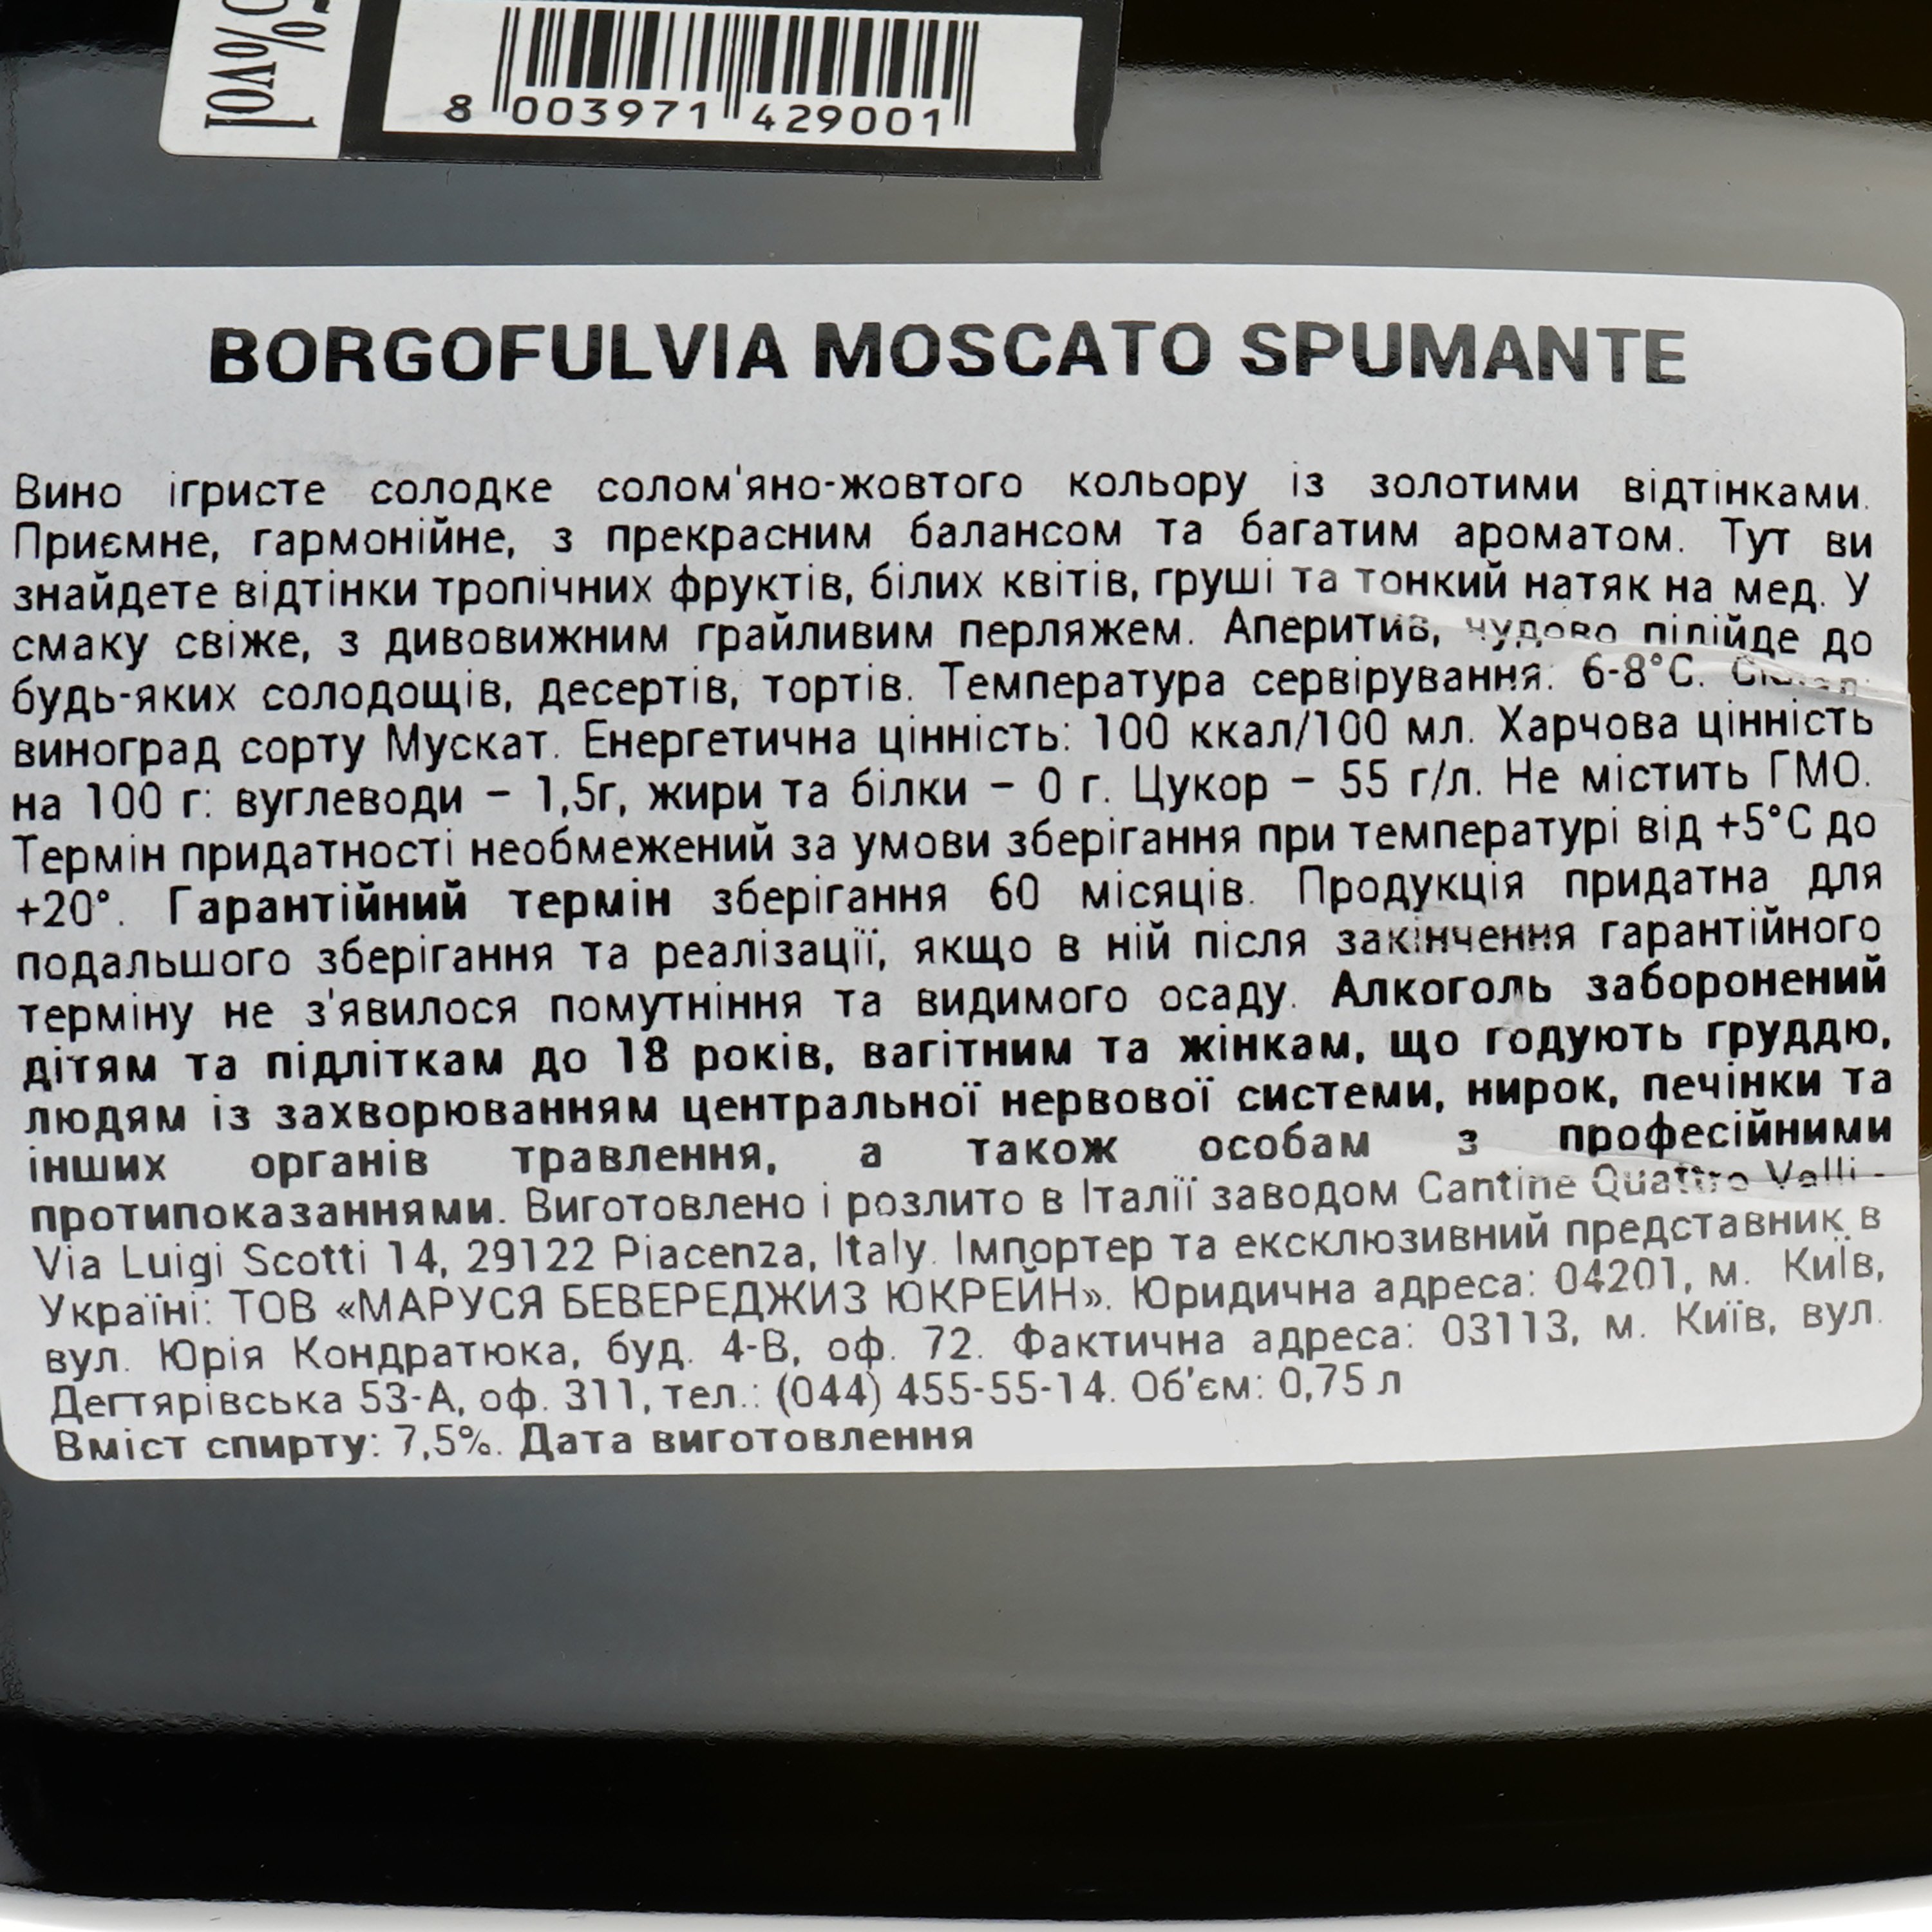 Игристое вино Borgofulvia Spumante Moscato dolce, белое, полусладкое, 7,5%, 0,75 л - фото 3